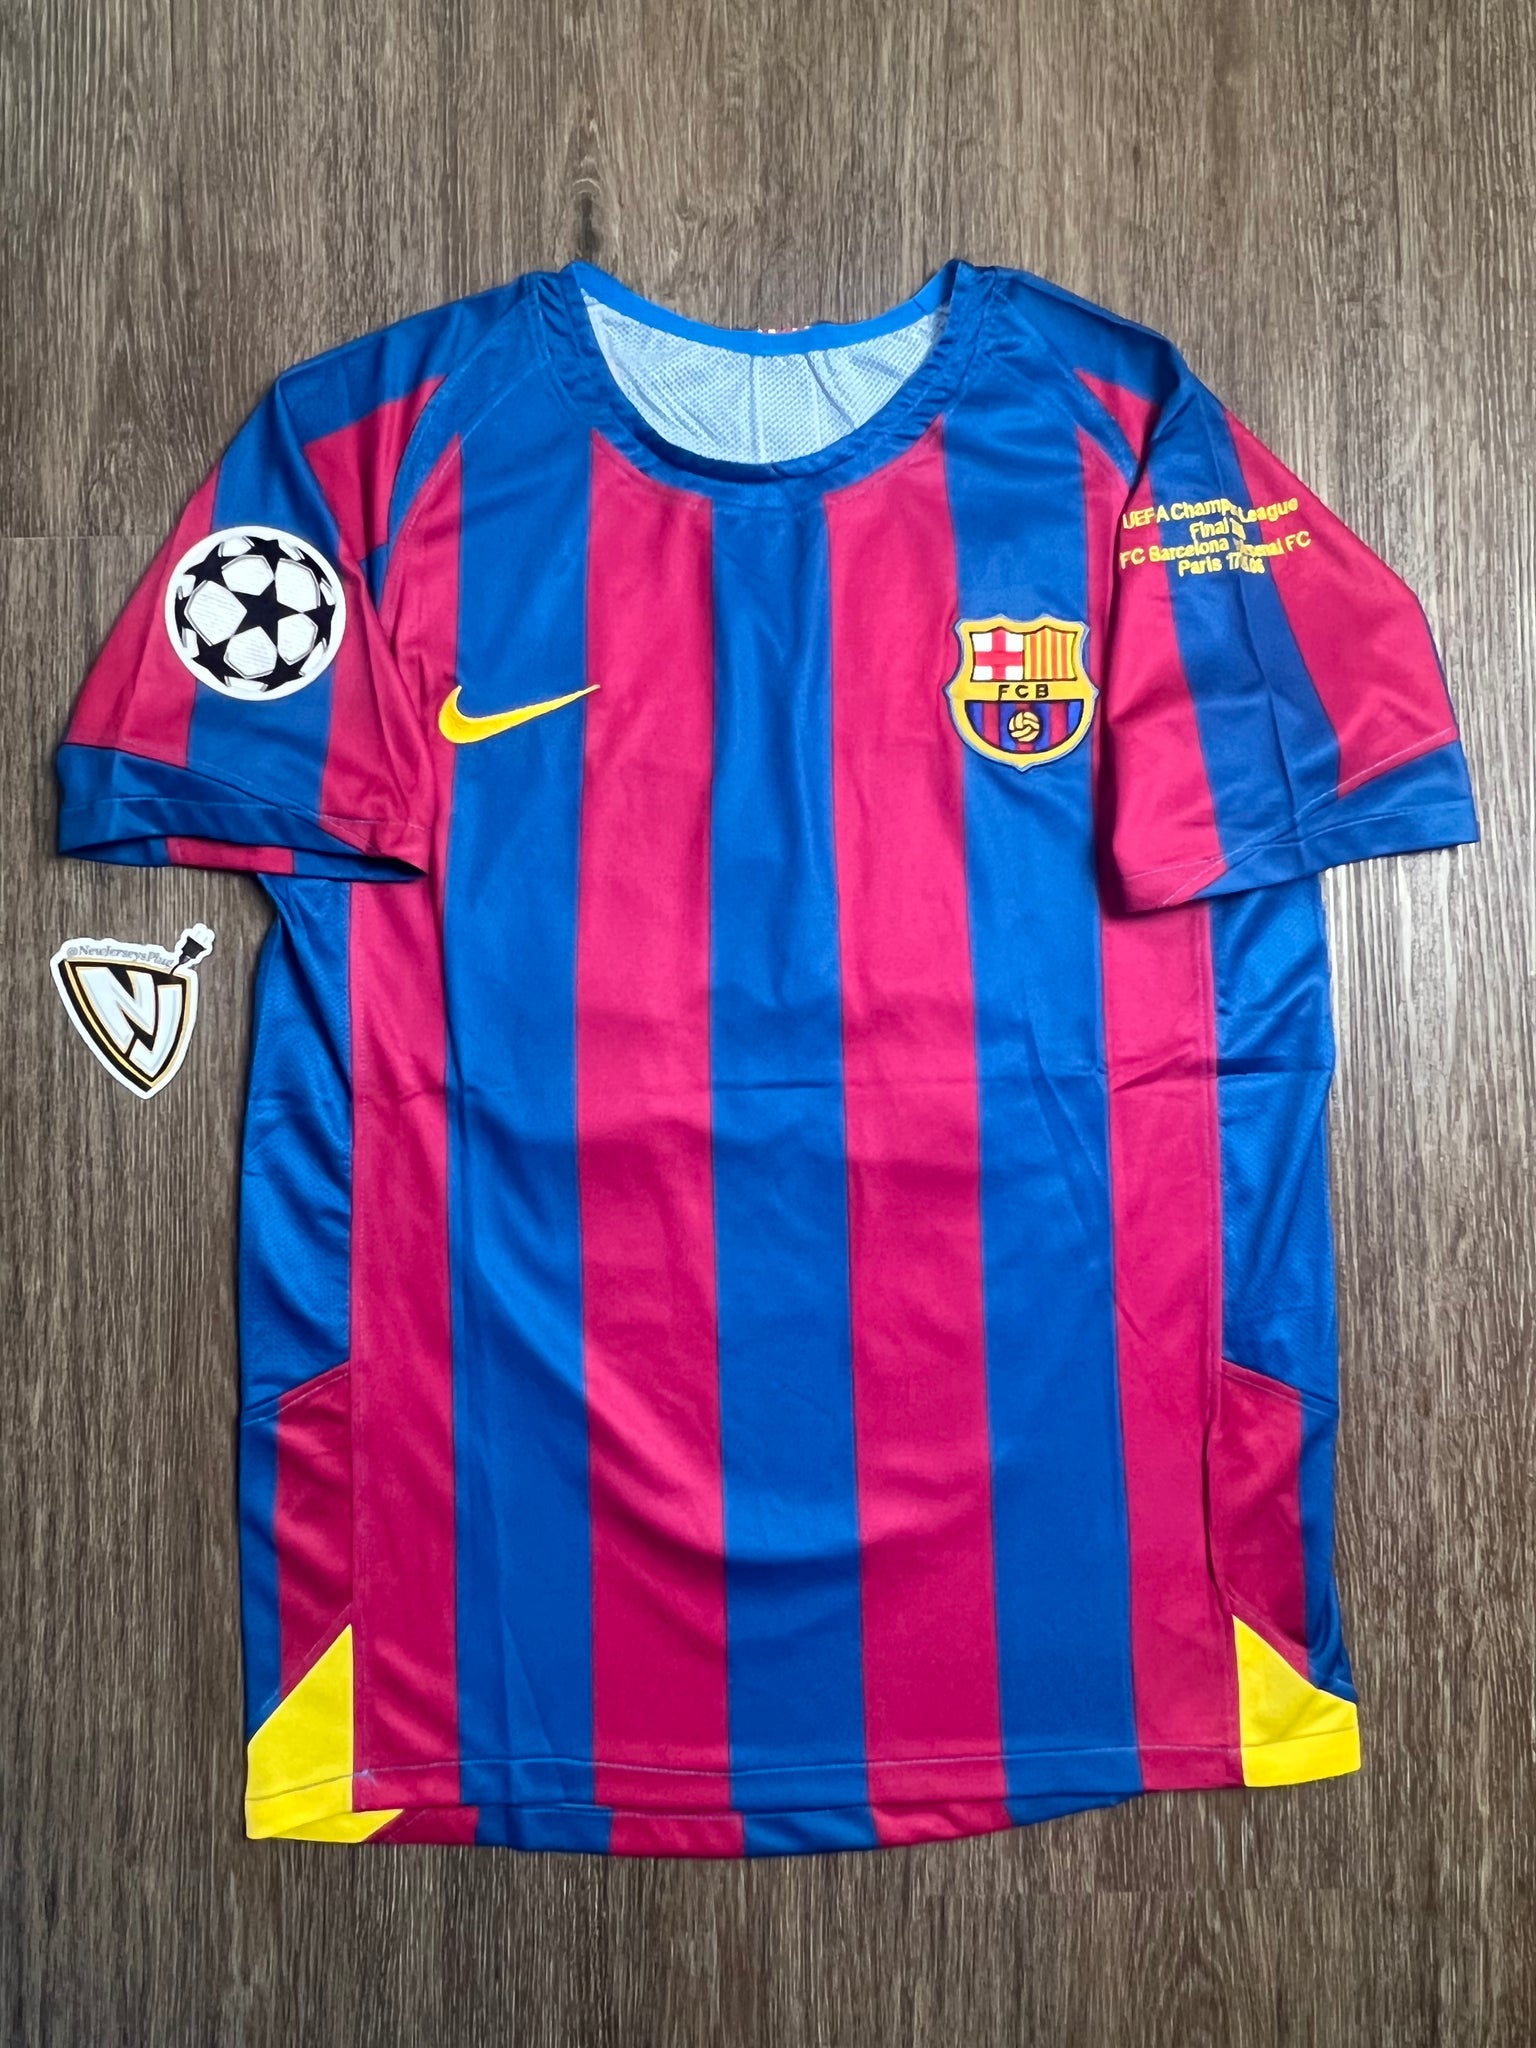 Barcelona Ronaldinho 10 Jersey